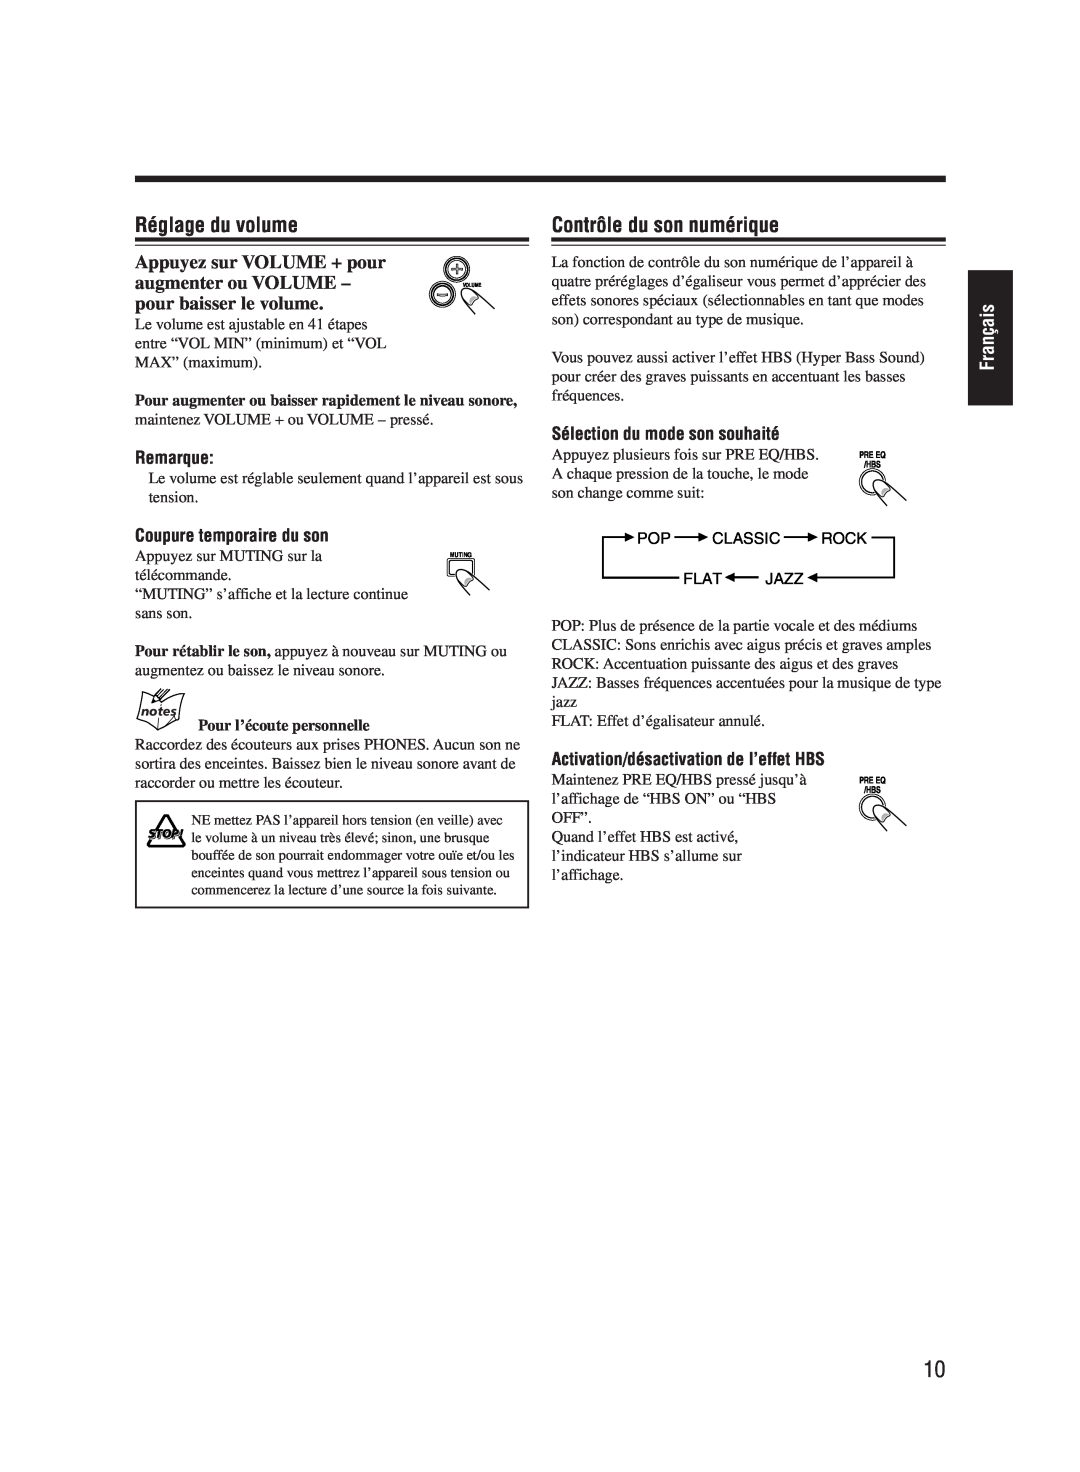 JVC UX-M55 manual Réglage du volume, Contrôle du son numérique, Français, Remarque, Coupure temporaire du son 